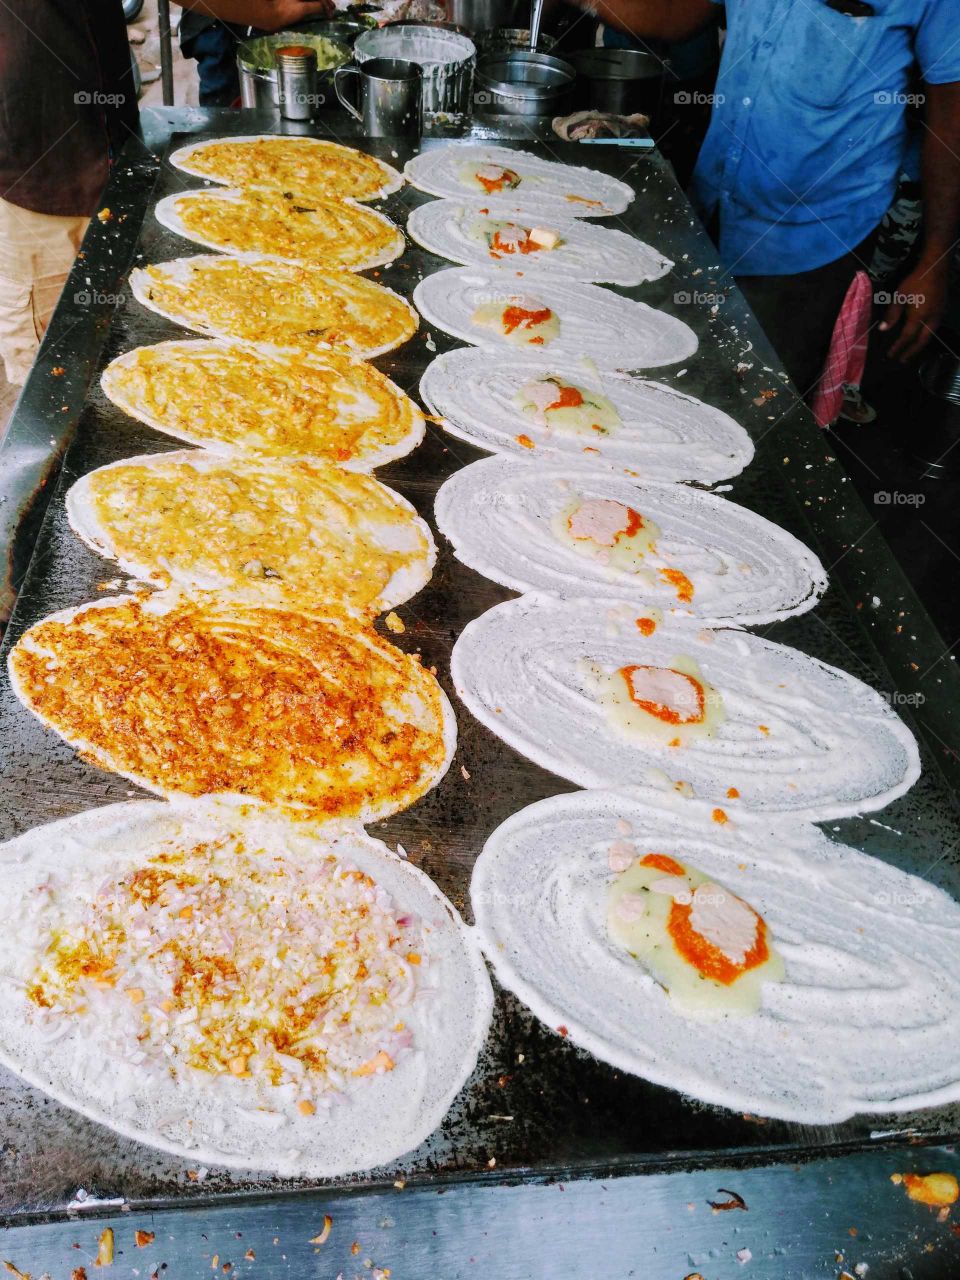 masala dosa making in a tiffin centre